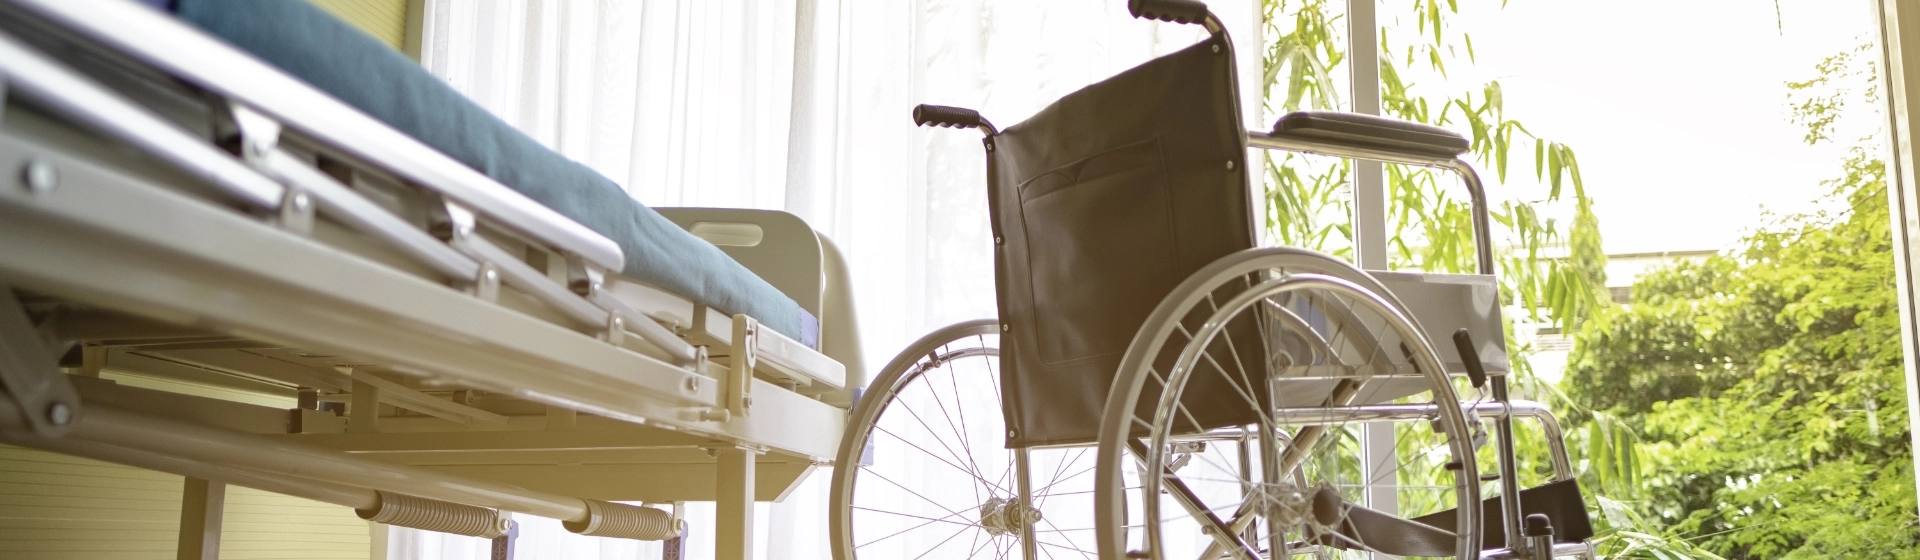 Łóżko rehabilitacyjne i wózek inwalidzki